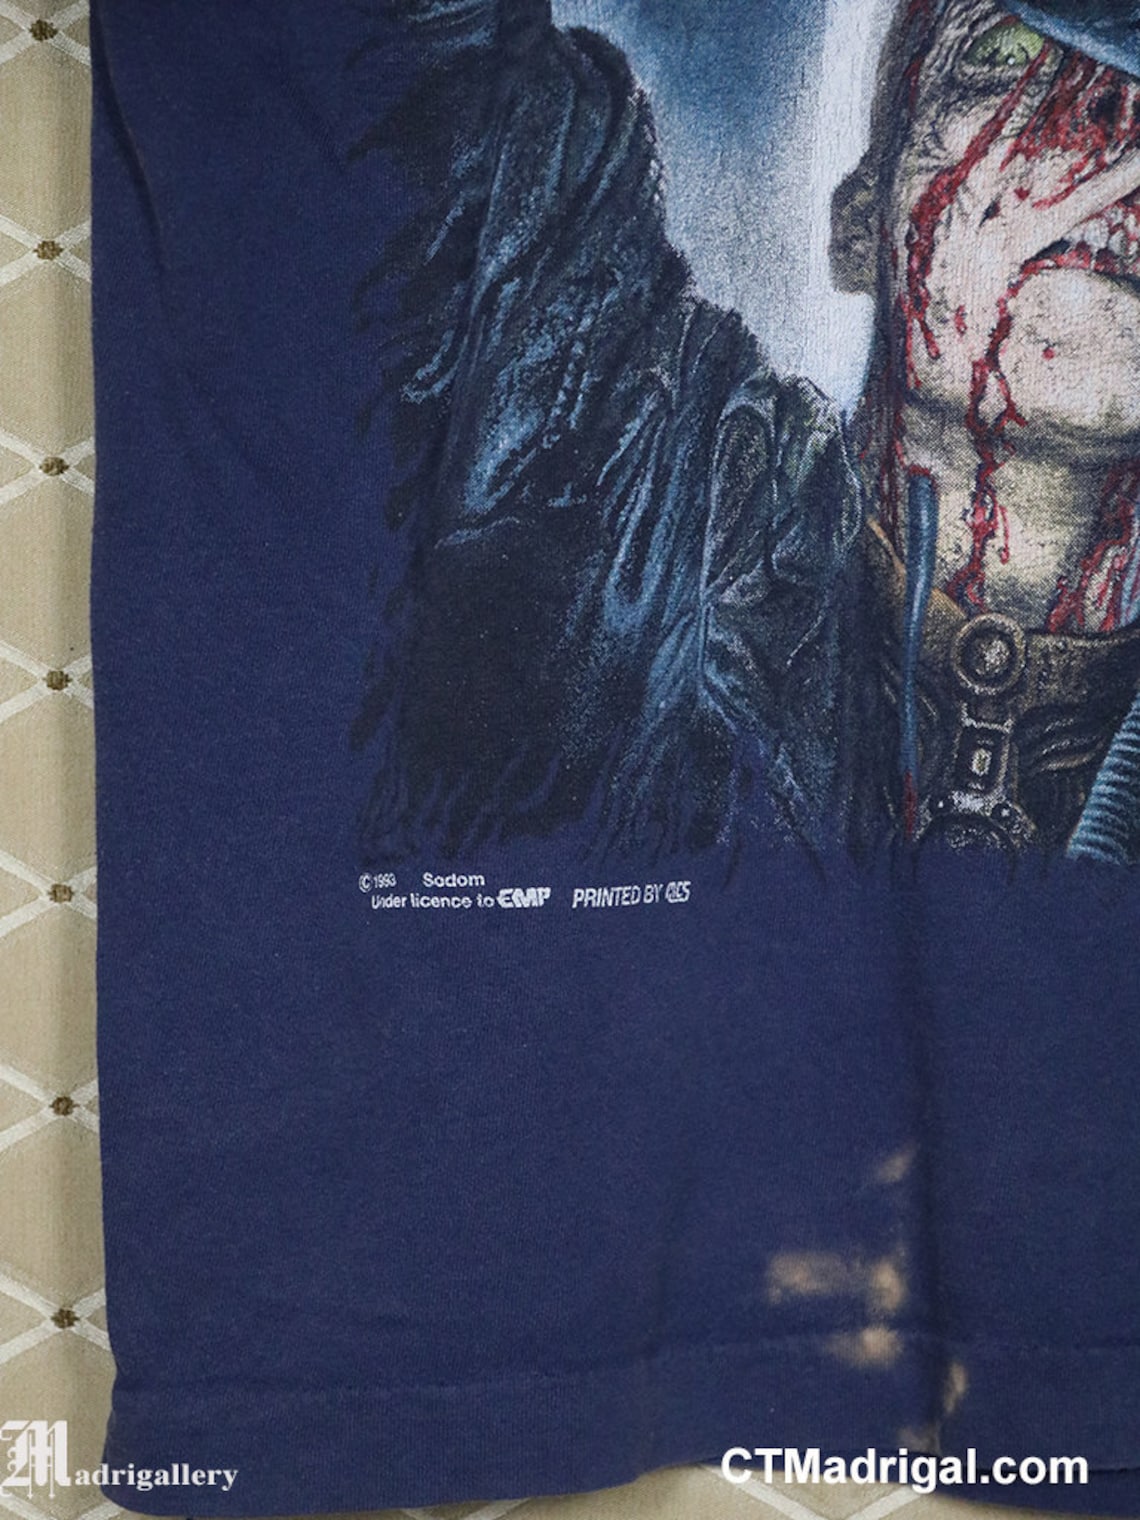 Sodom t-shirt vintage rare tee shirt thrash black metal | Etsy